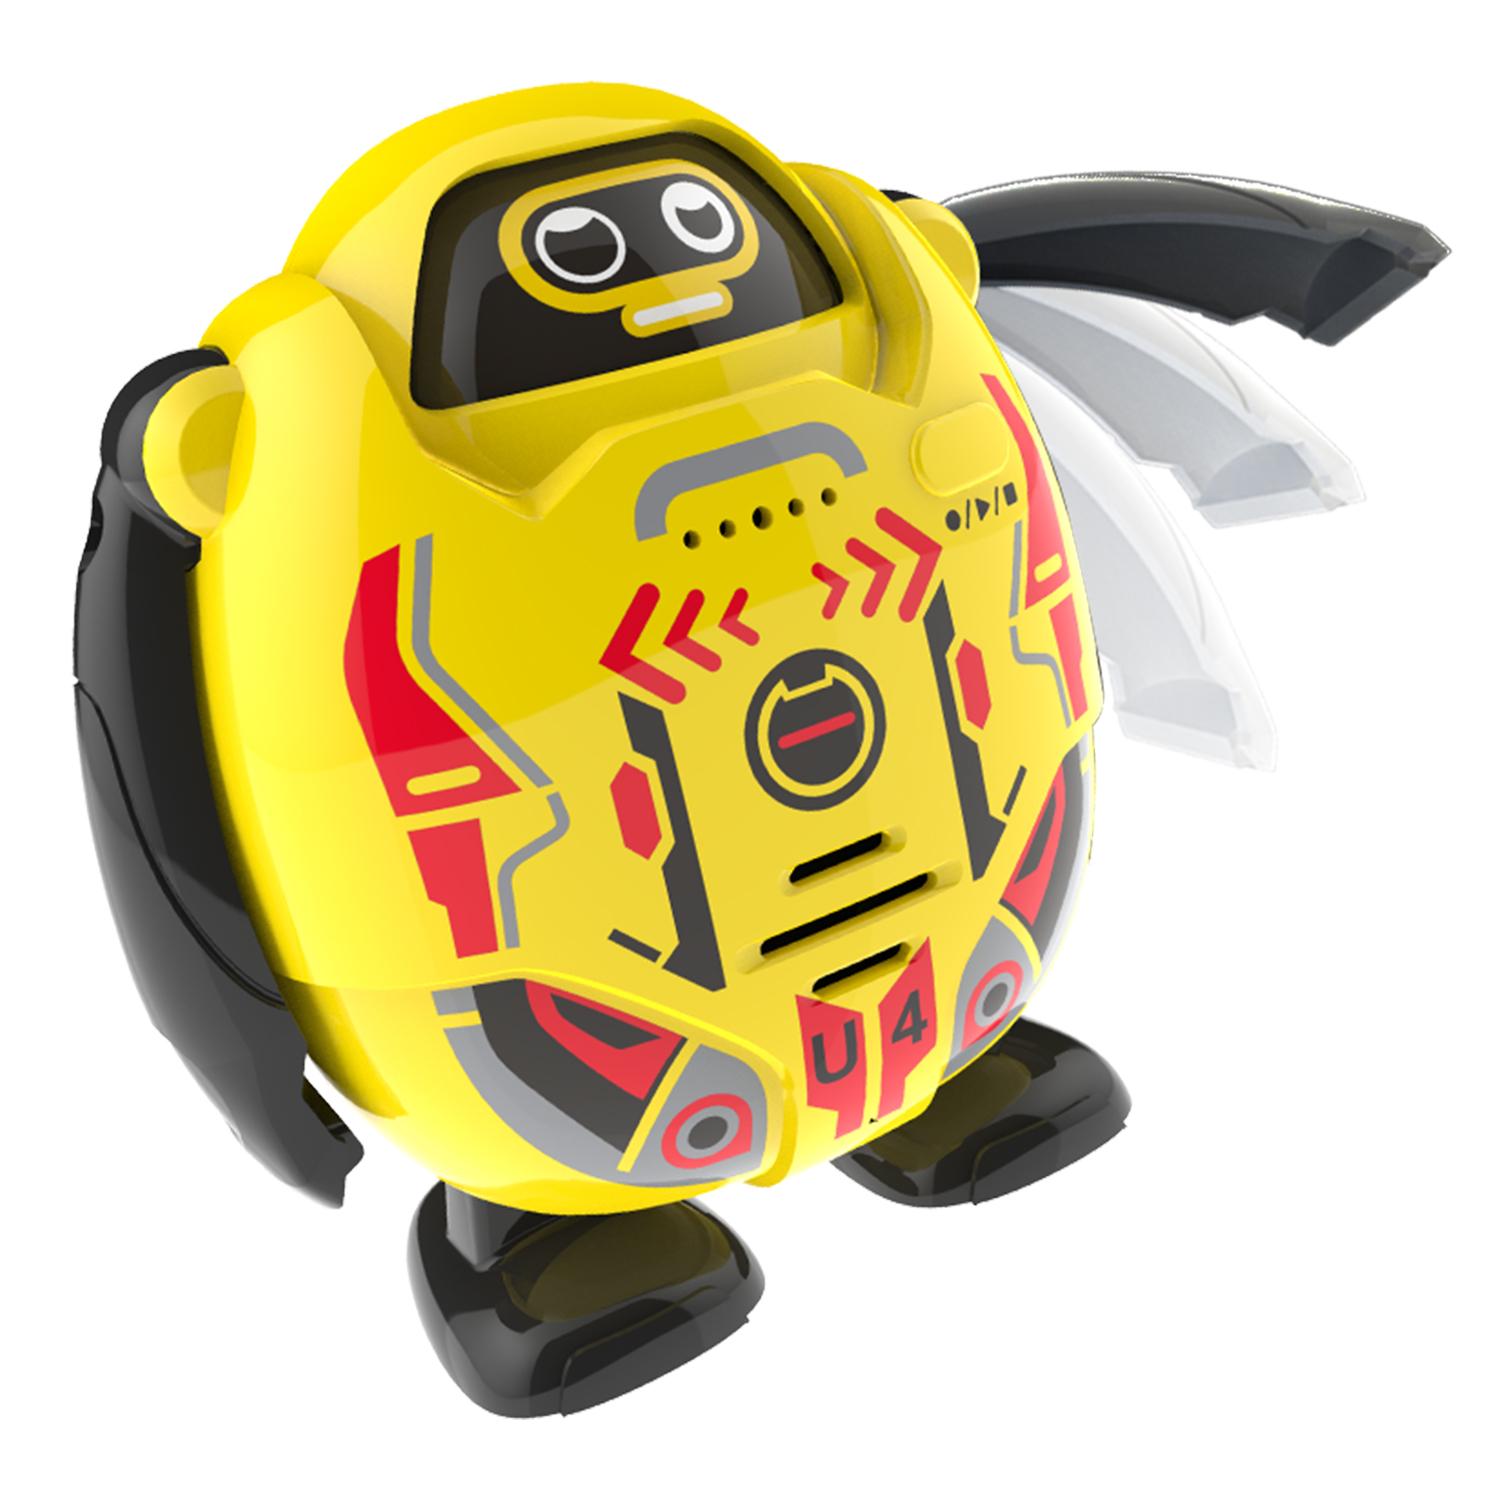 Робот - Токибот, желтый, свет и звук  